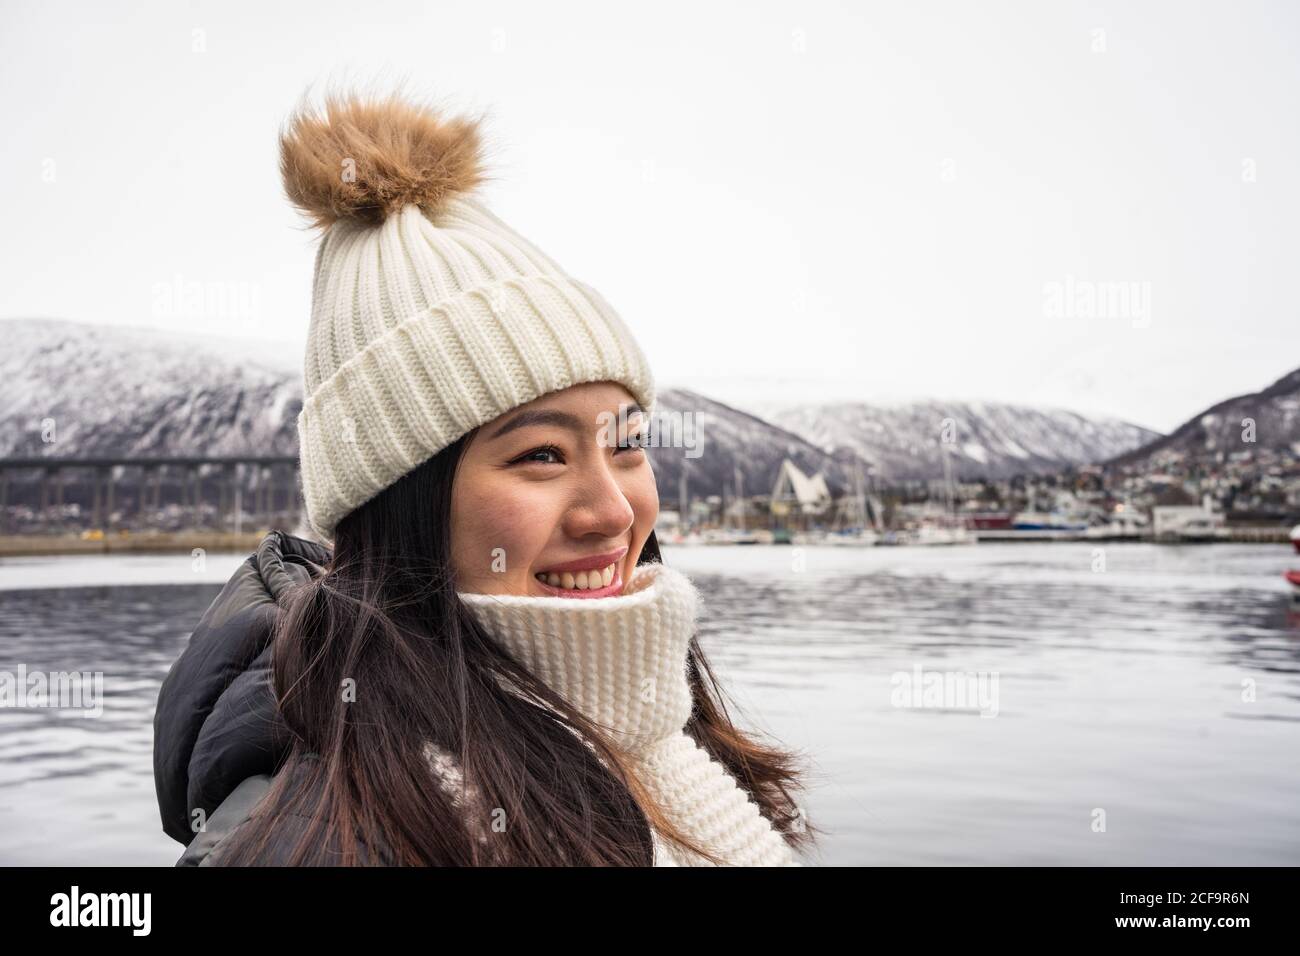 Junge fröhliche asiatische weibliche Tourist in warmer Kleidung und Hut Lächelnd beim Sightseeing mit Bergen und Meer im Hintergrund Tromso in Norwegen Stockfoto